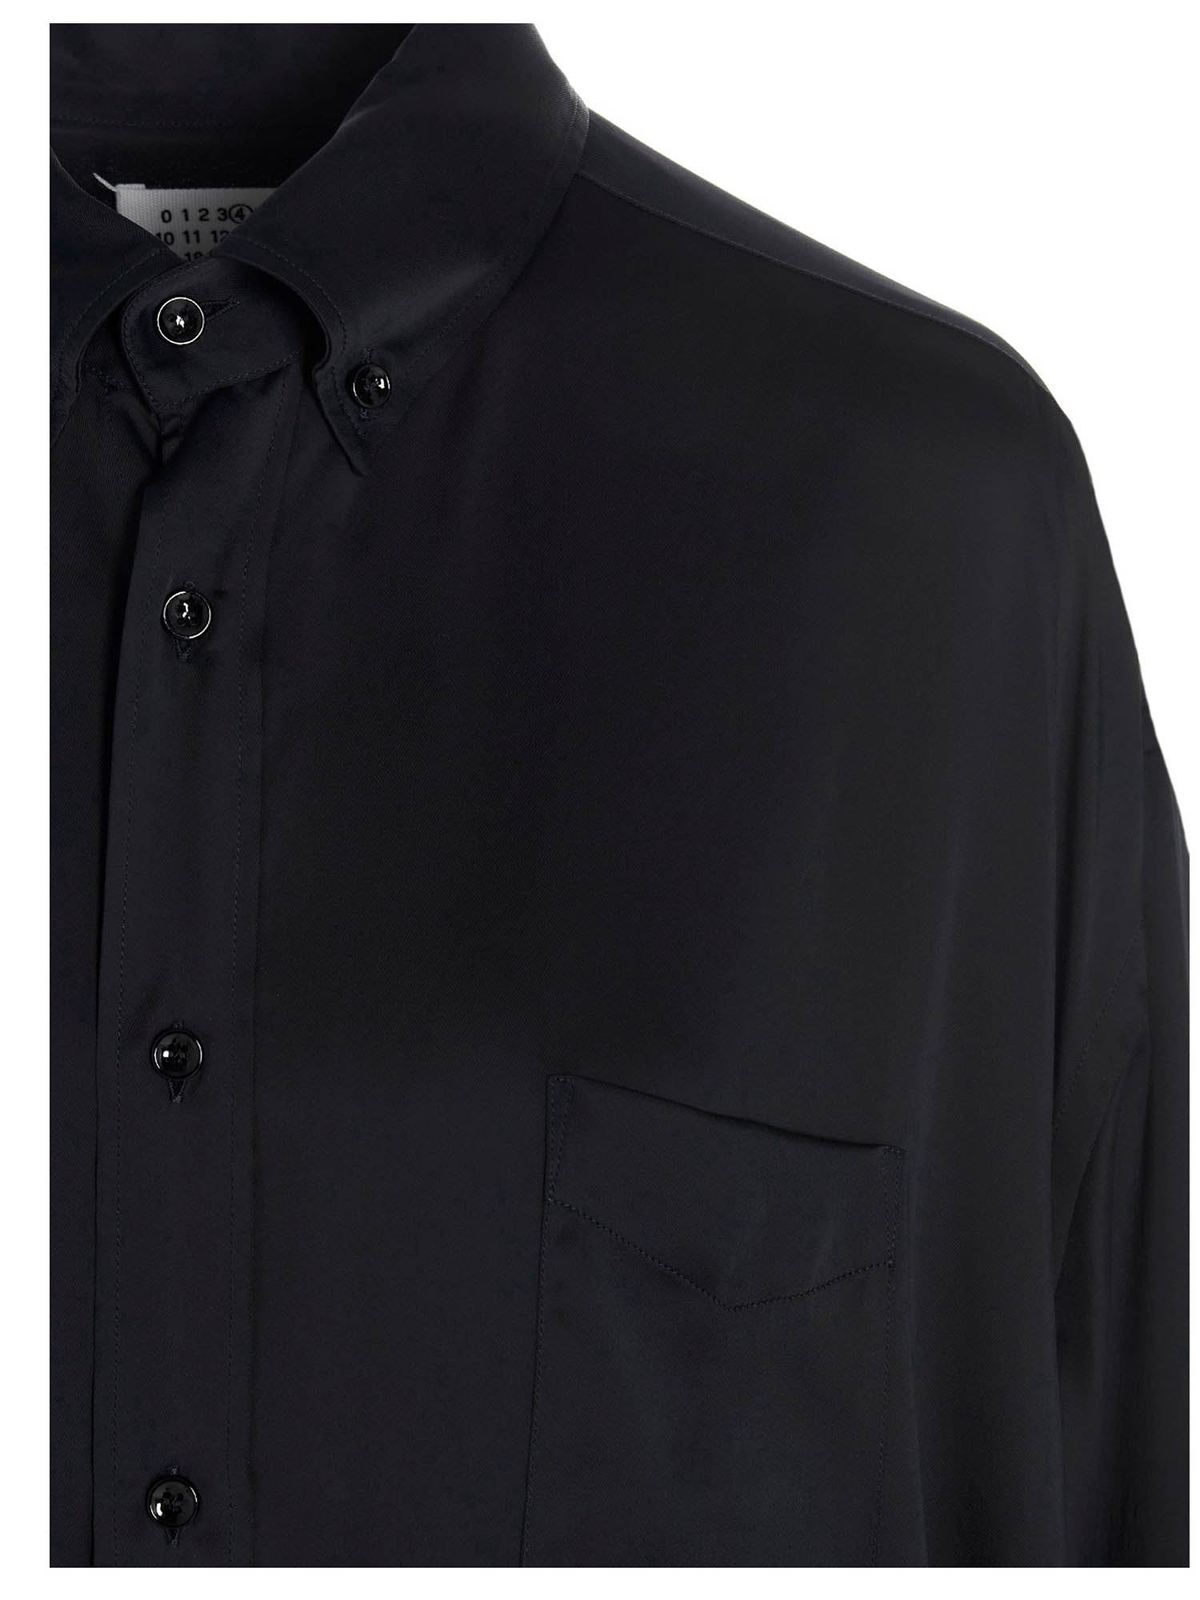 Maison Margiela - Oversized shirt in black - shirts - S51DL0352S53680900